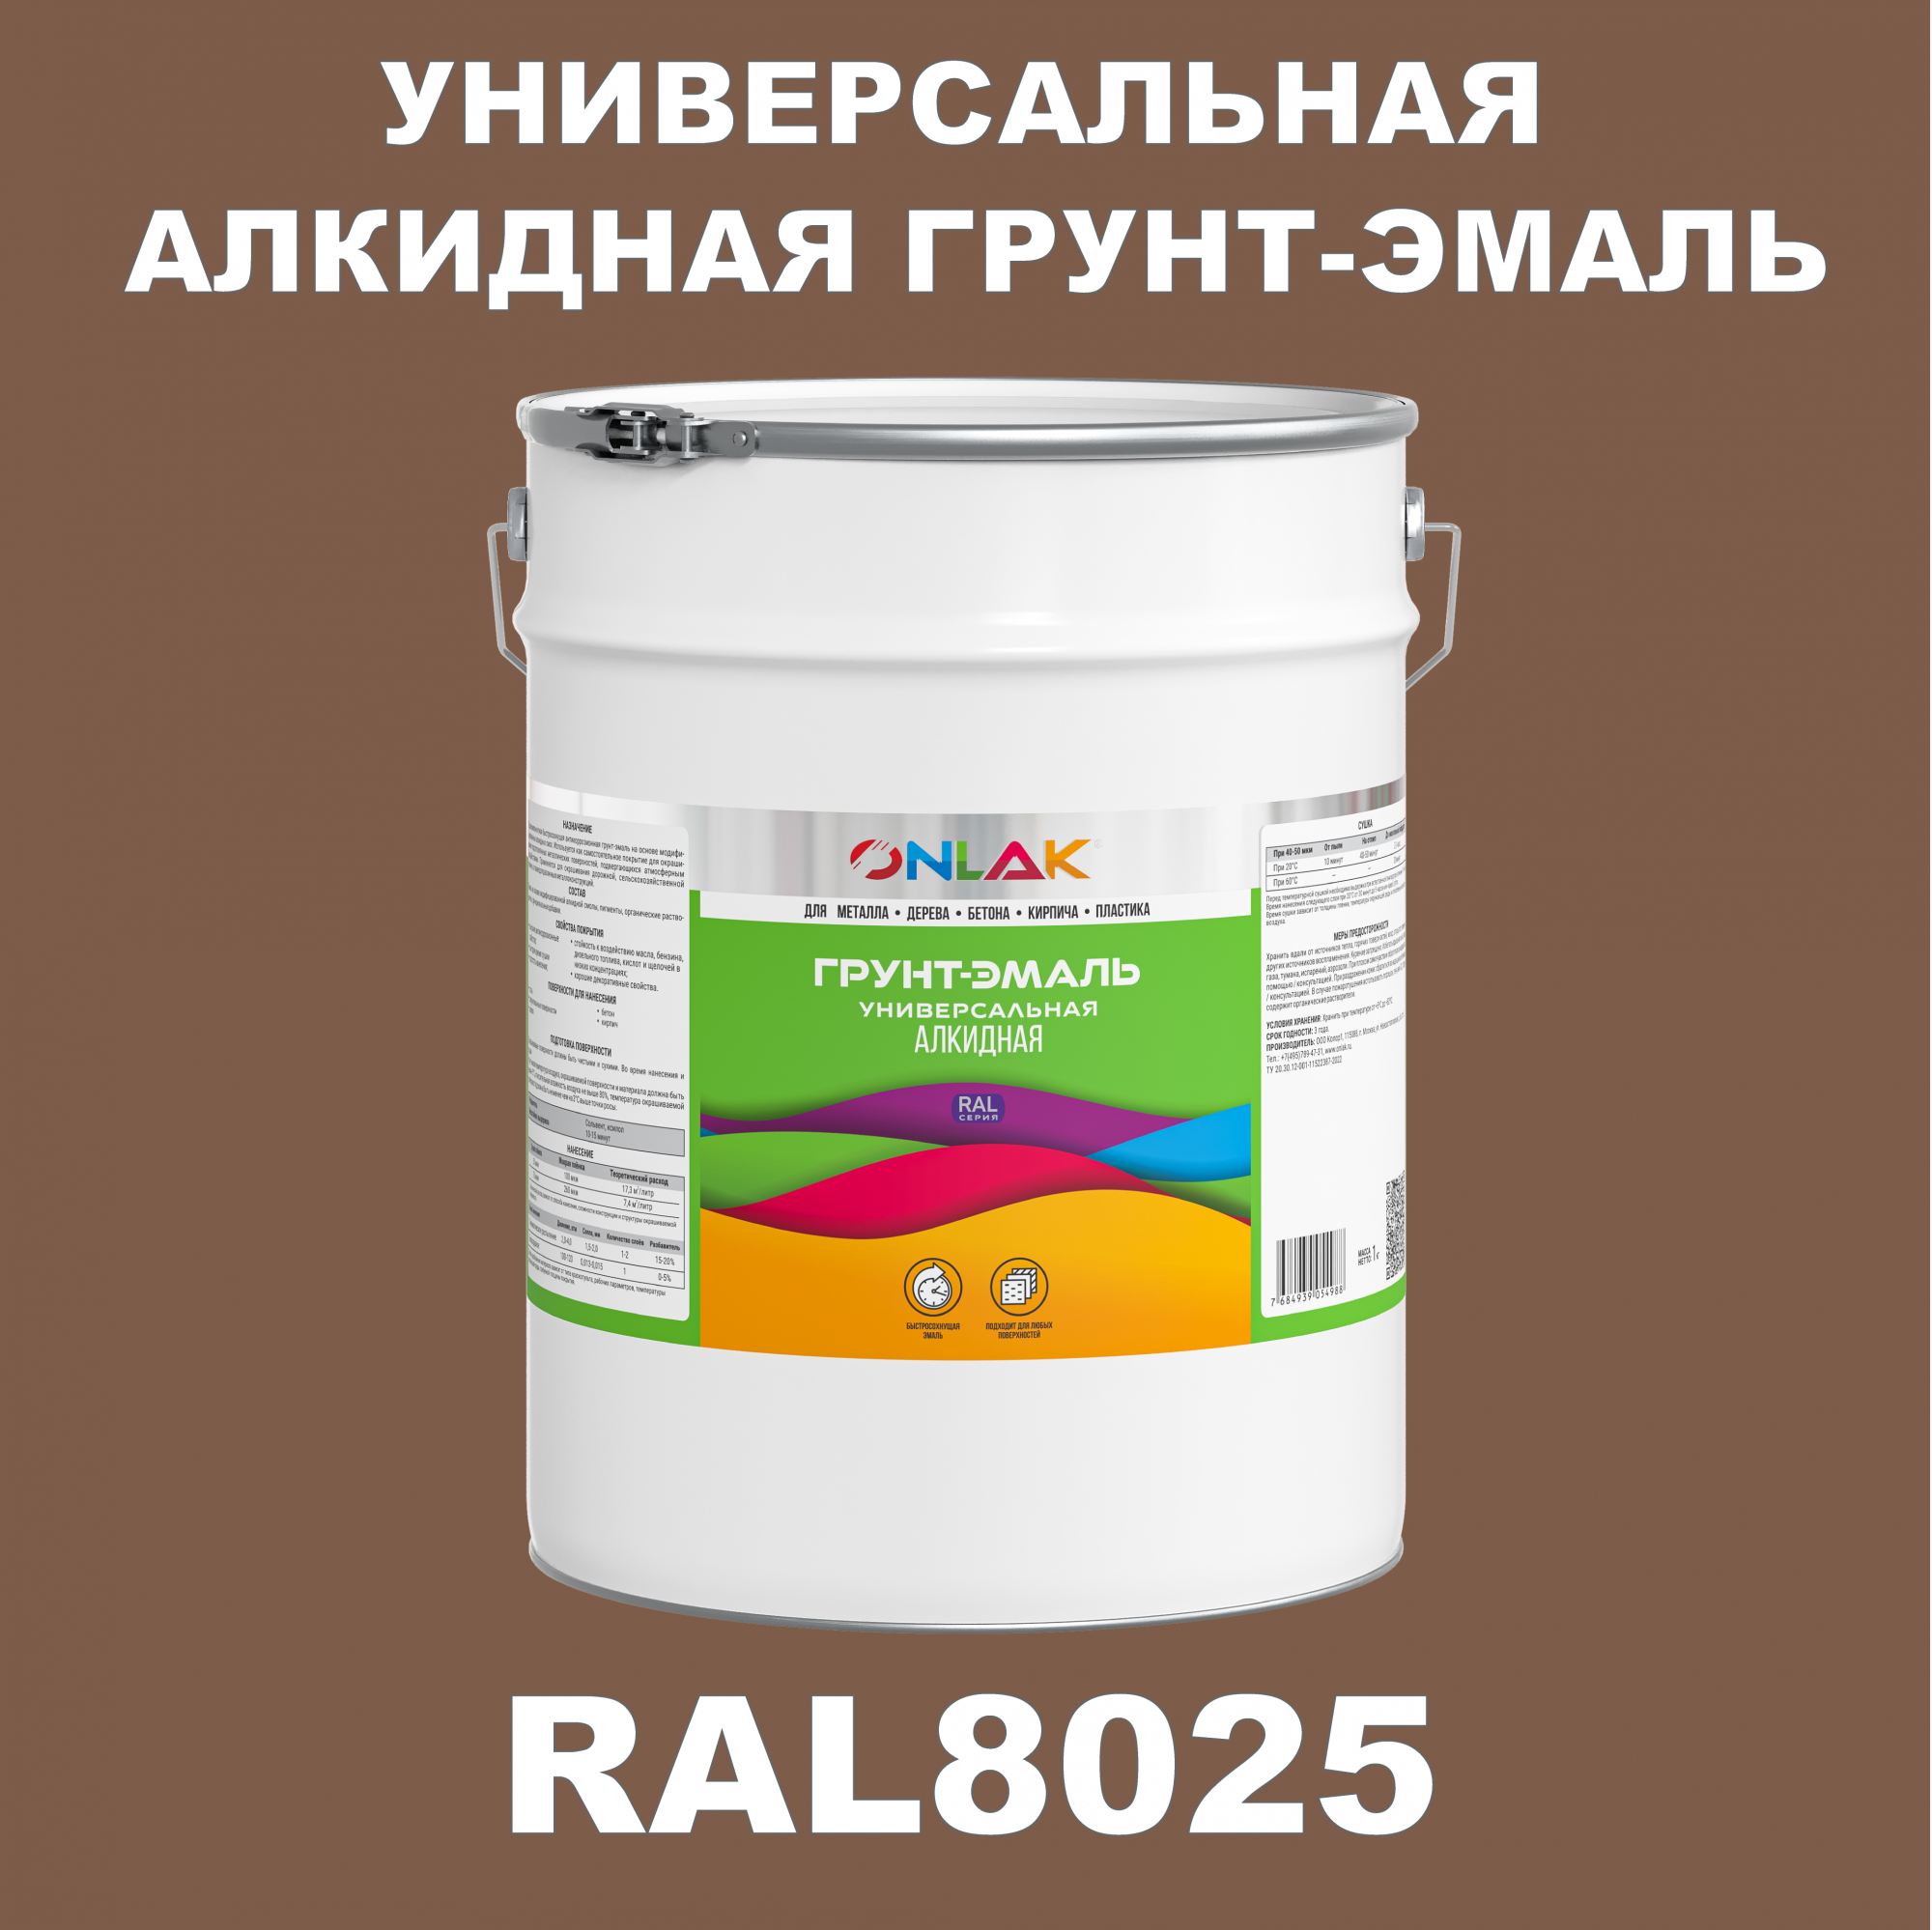 Грунт-эмаль ONLAK 1К RAL8025 антикоррозионная алкидная по металлу по ржавчине 20 кг грунт эмаль neomid по ржавчине быстросохнущая алкидная серая 0 9 кг